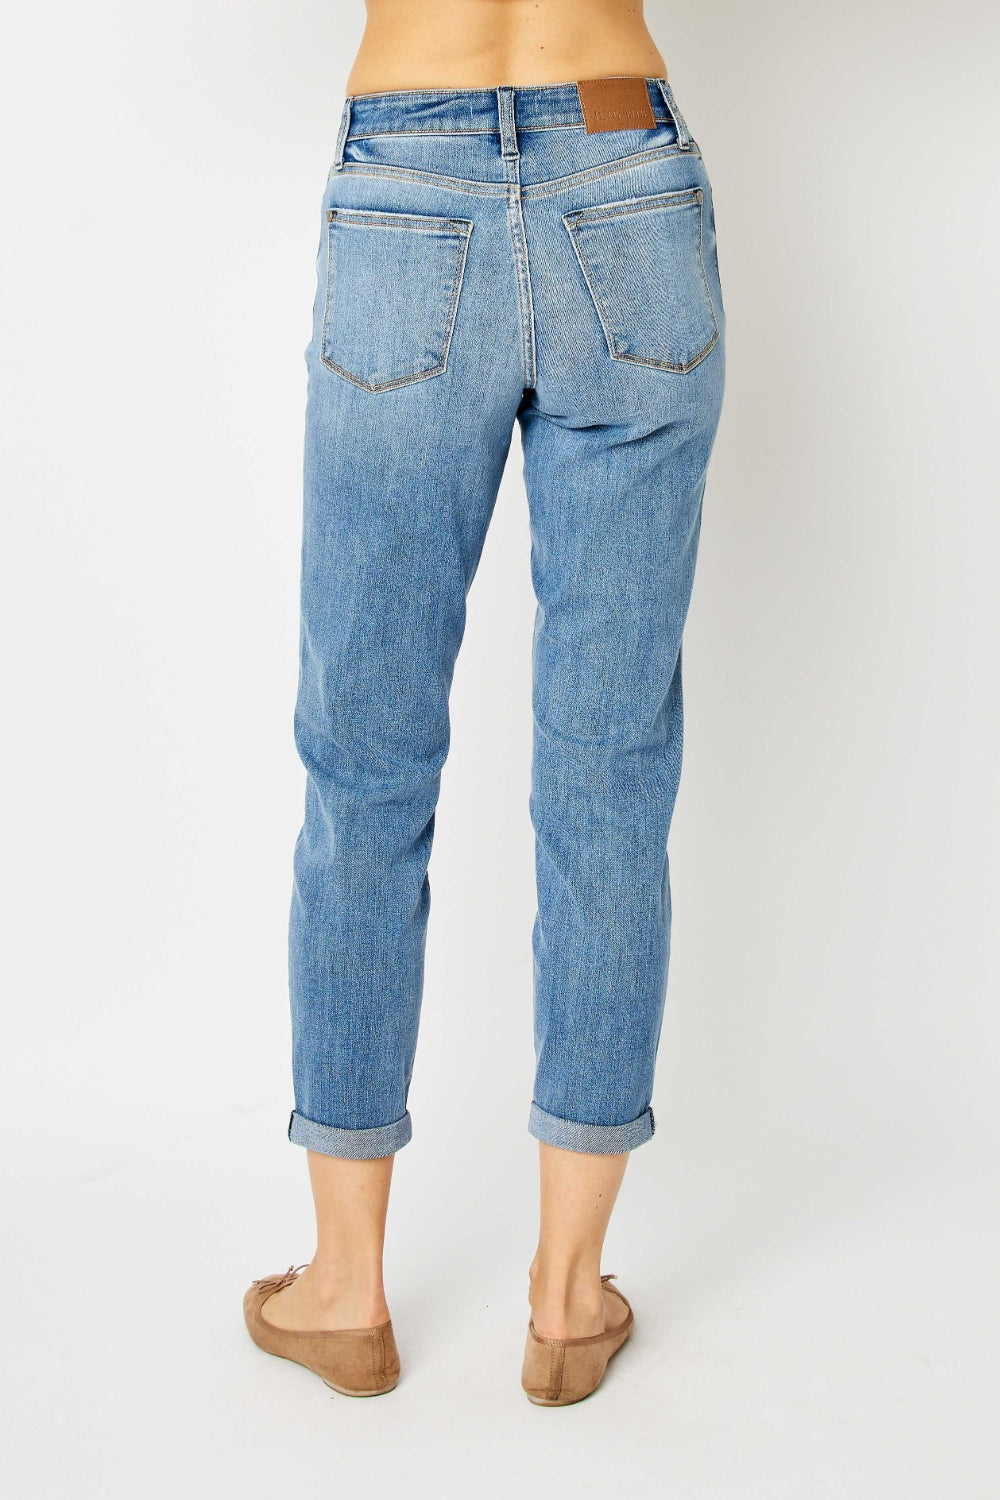 Judy Blue Apple Tree Full Size Cuffed Hem Slim Jeans